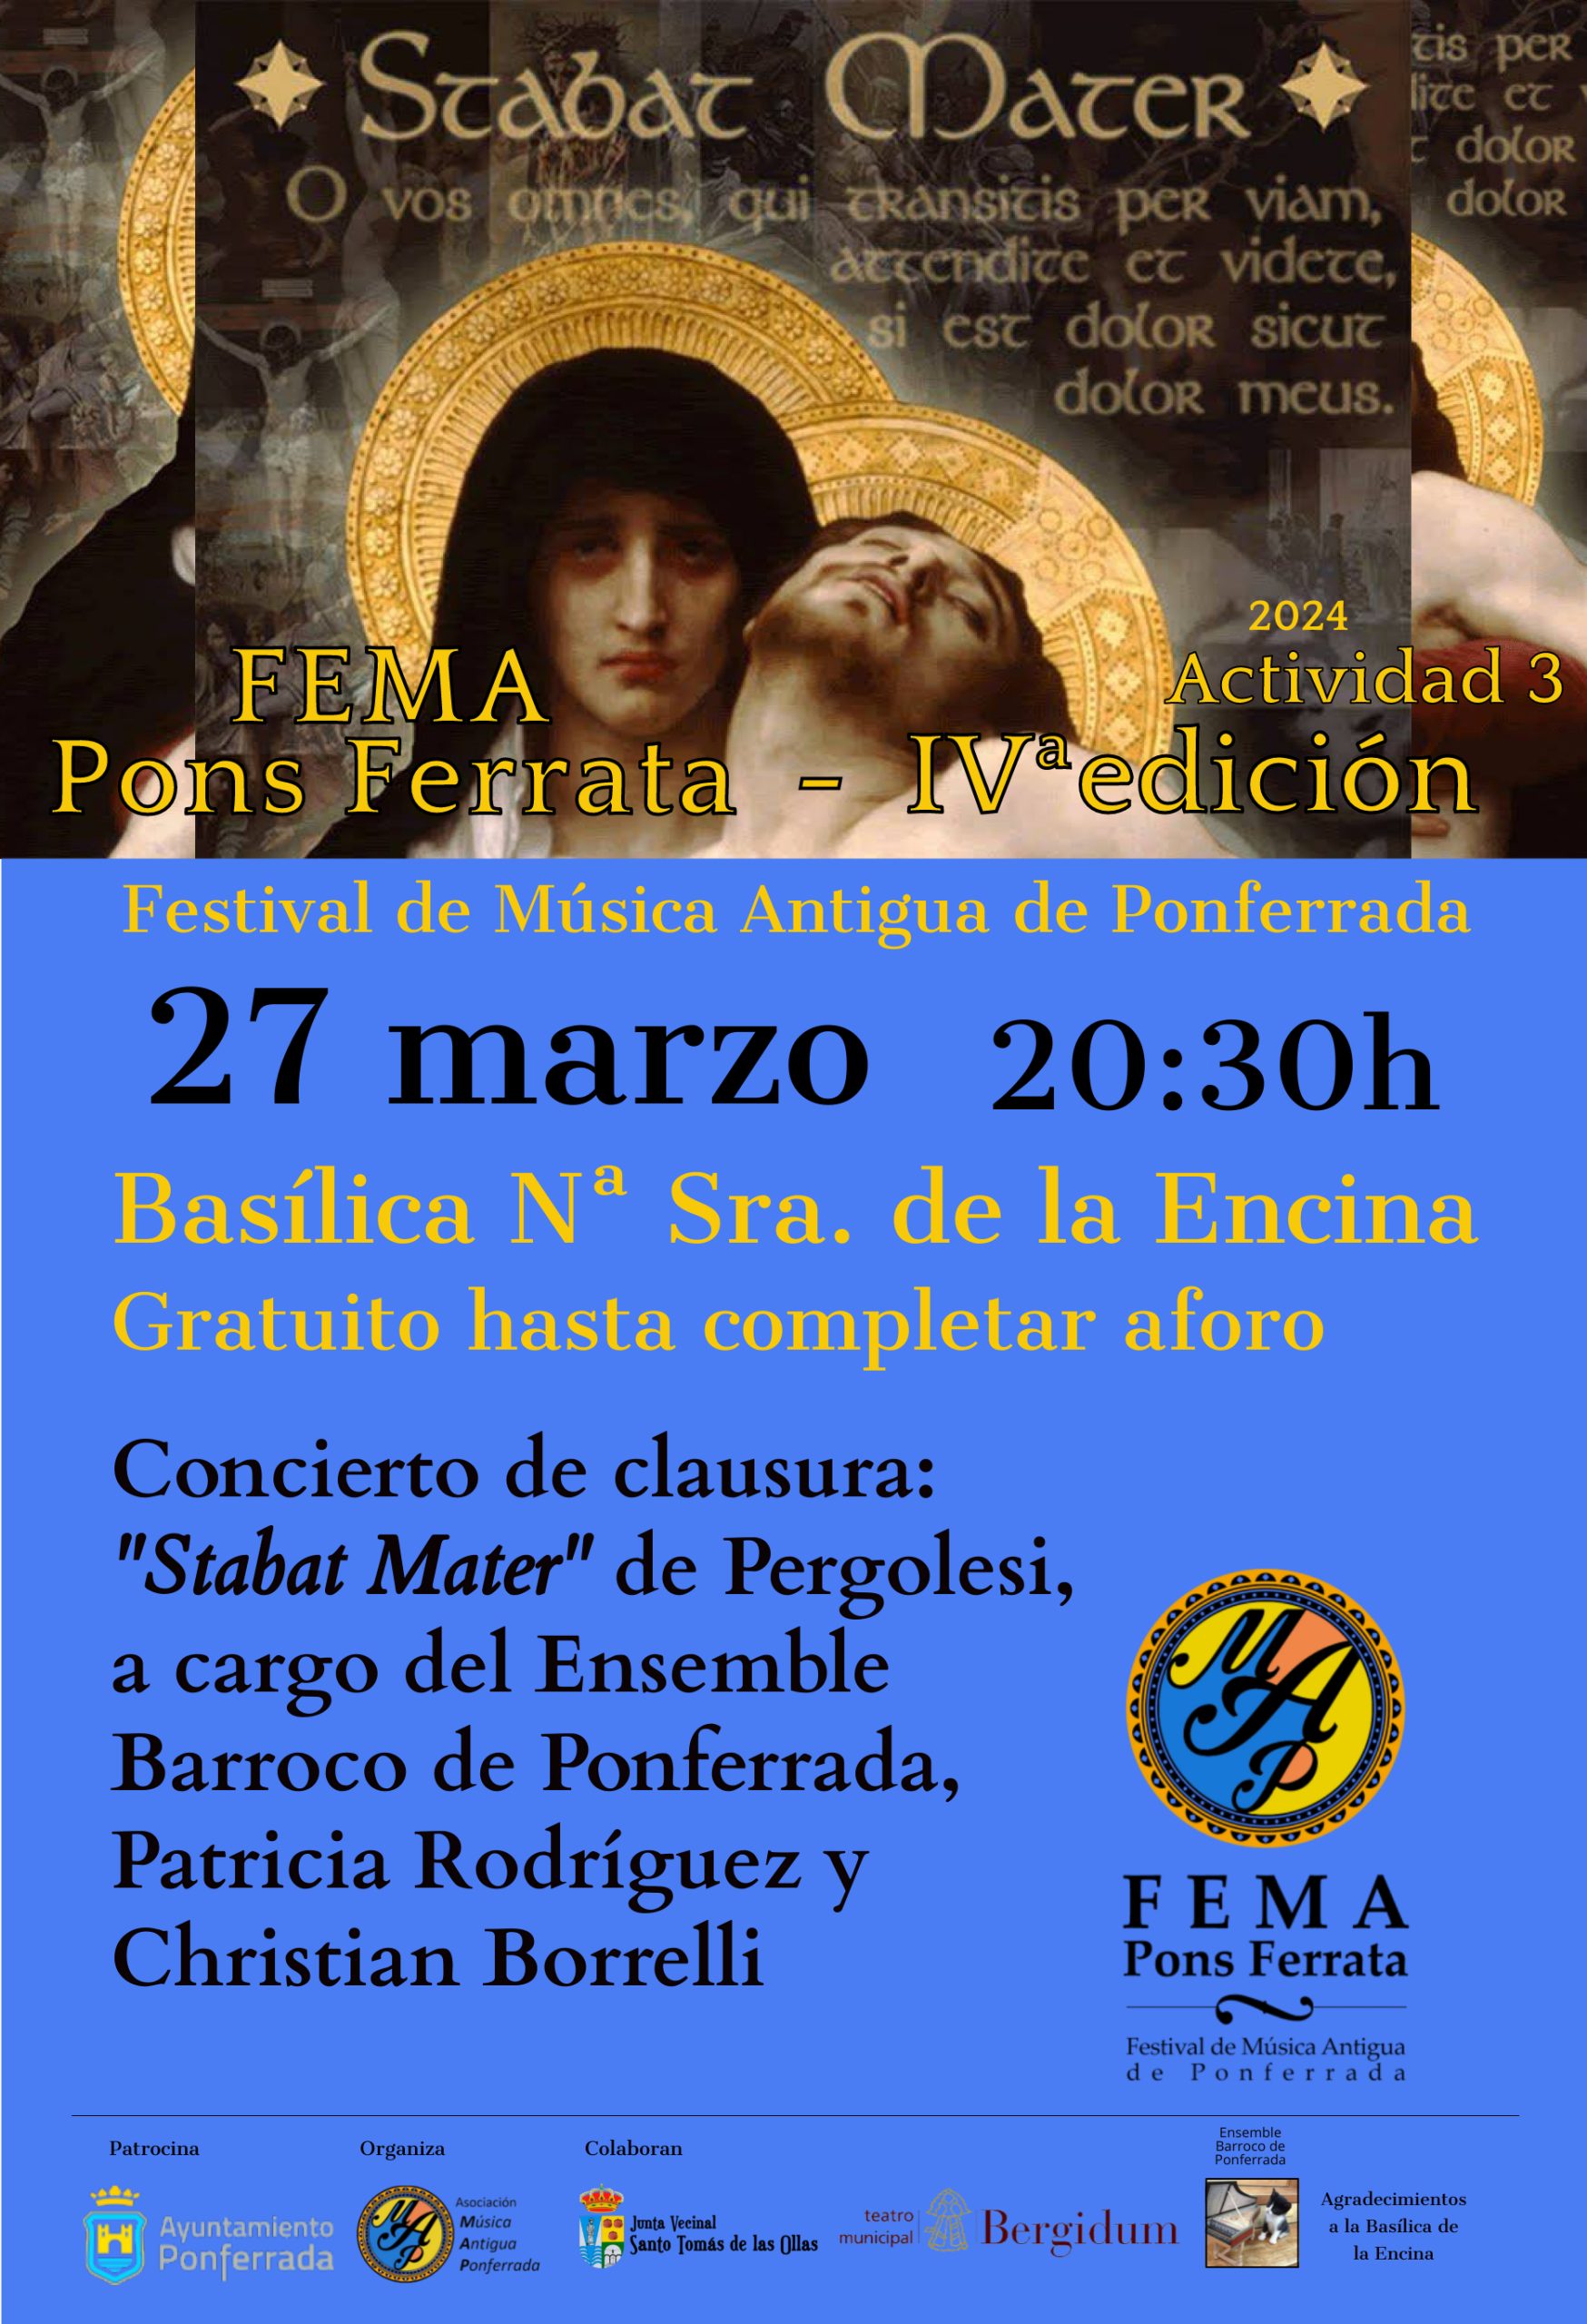 4ª edición del Festival de Música Antigua de Ponferrada “FEMA Pons Ferrata” se celebra del 25 al 27 de marzo 4